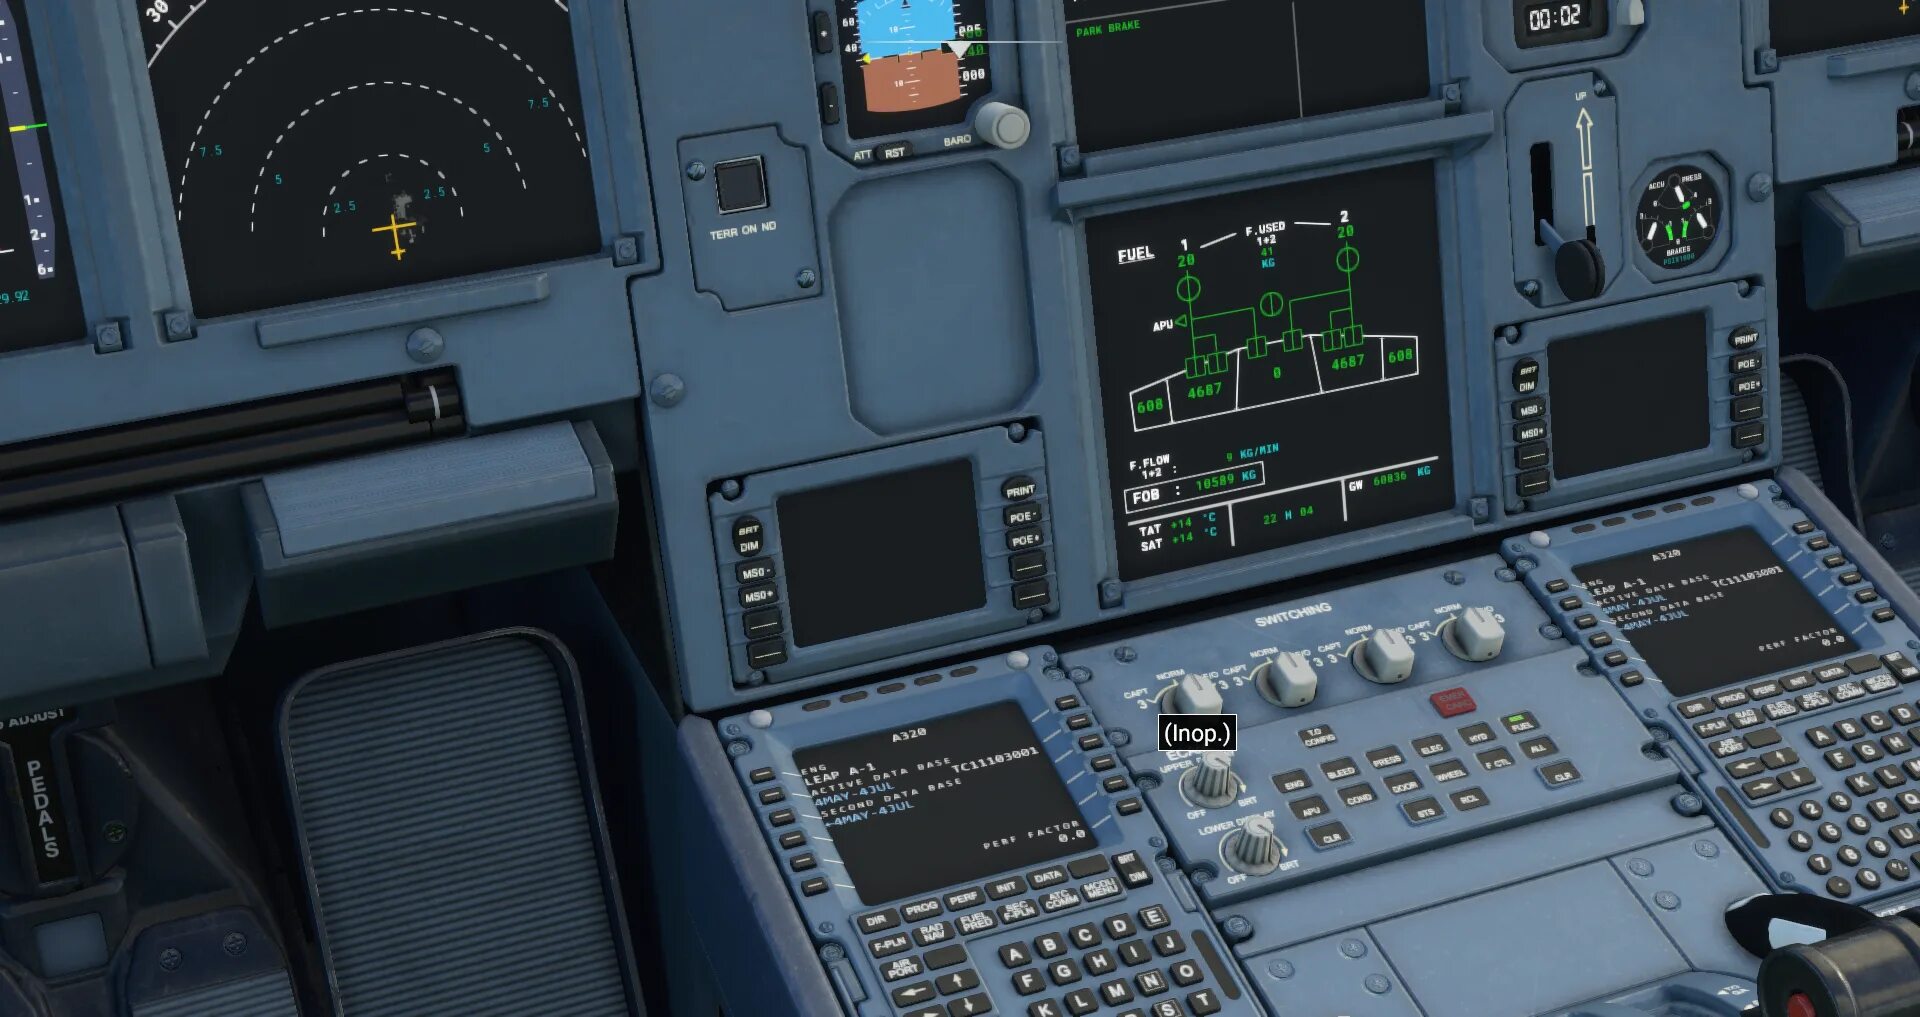 A320 NX flybywire. Microsoft Flight Simulator (2020). Flybywire a32nx. MSFS 2020 Cockpit a32nx.